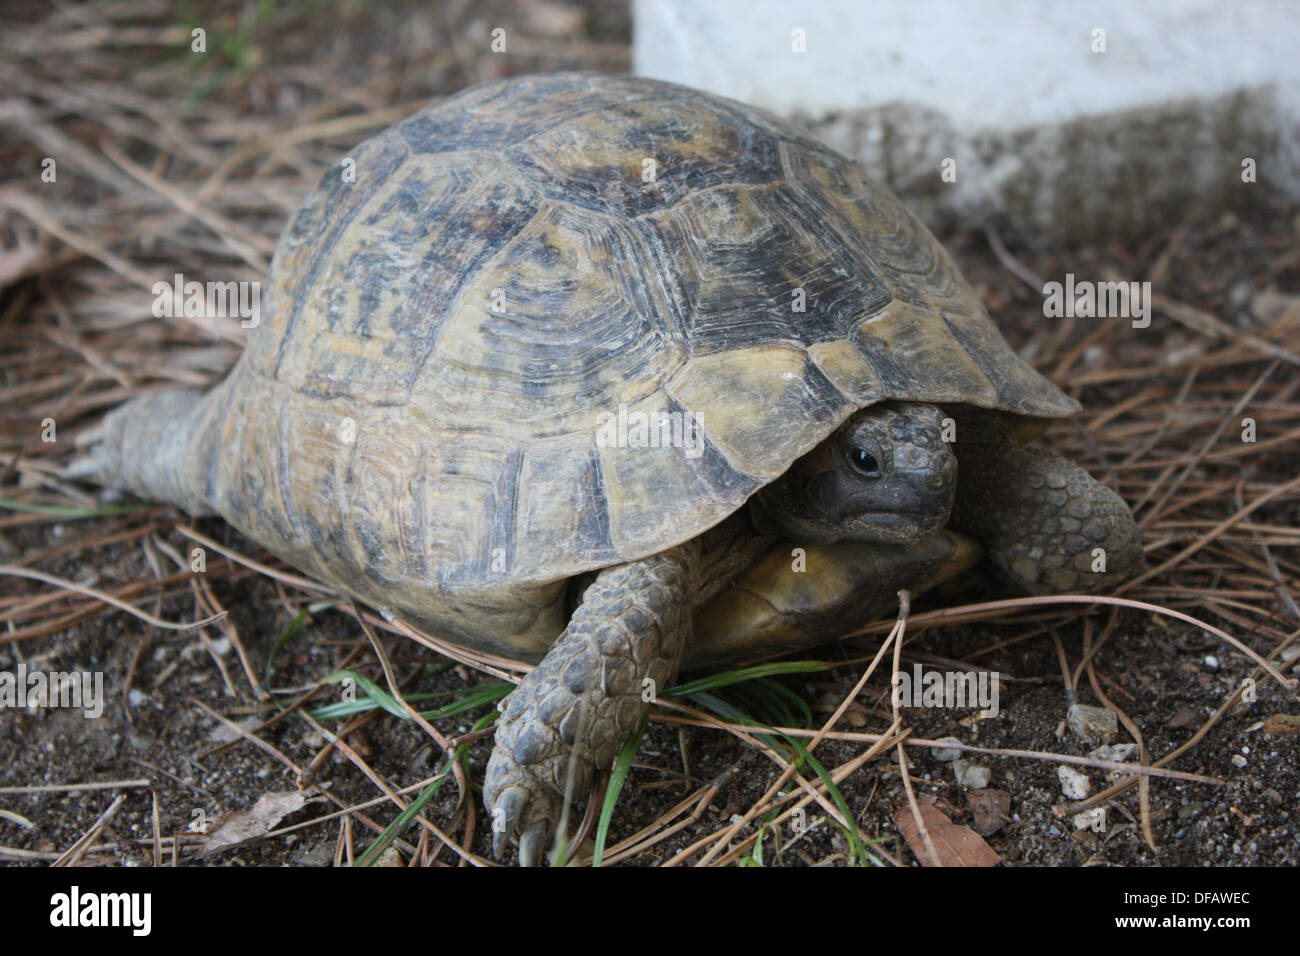 Una tortuga que sobresale de su concha. Foto de stock